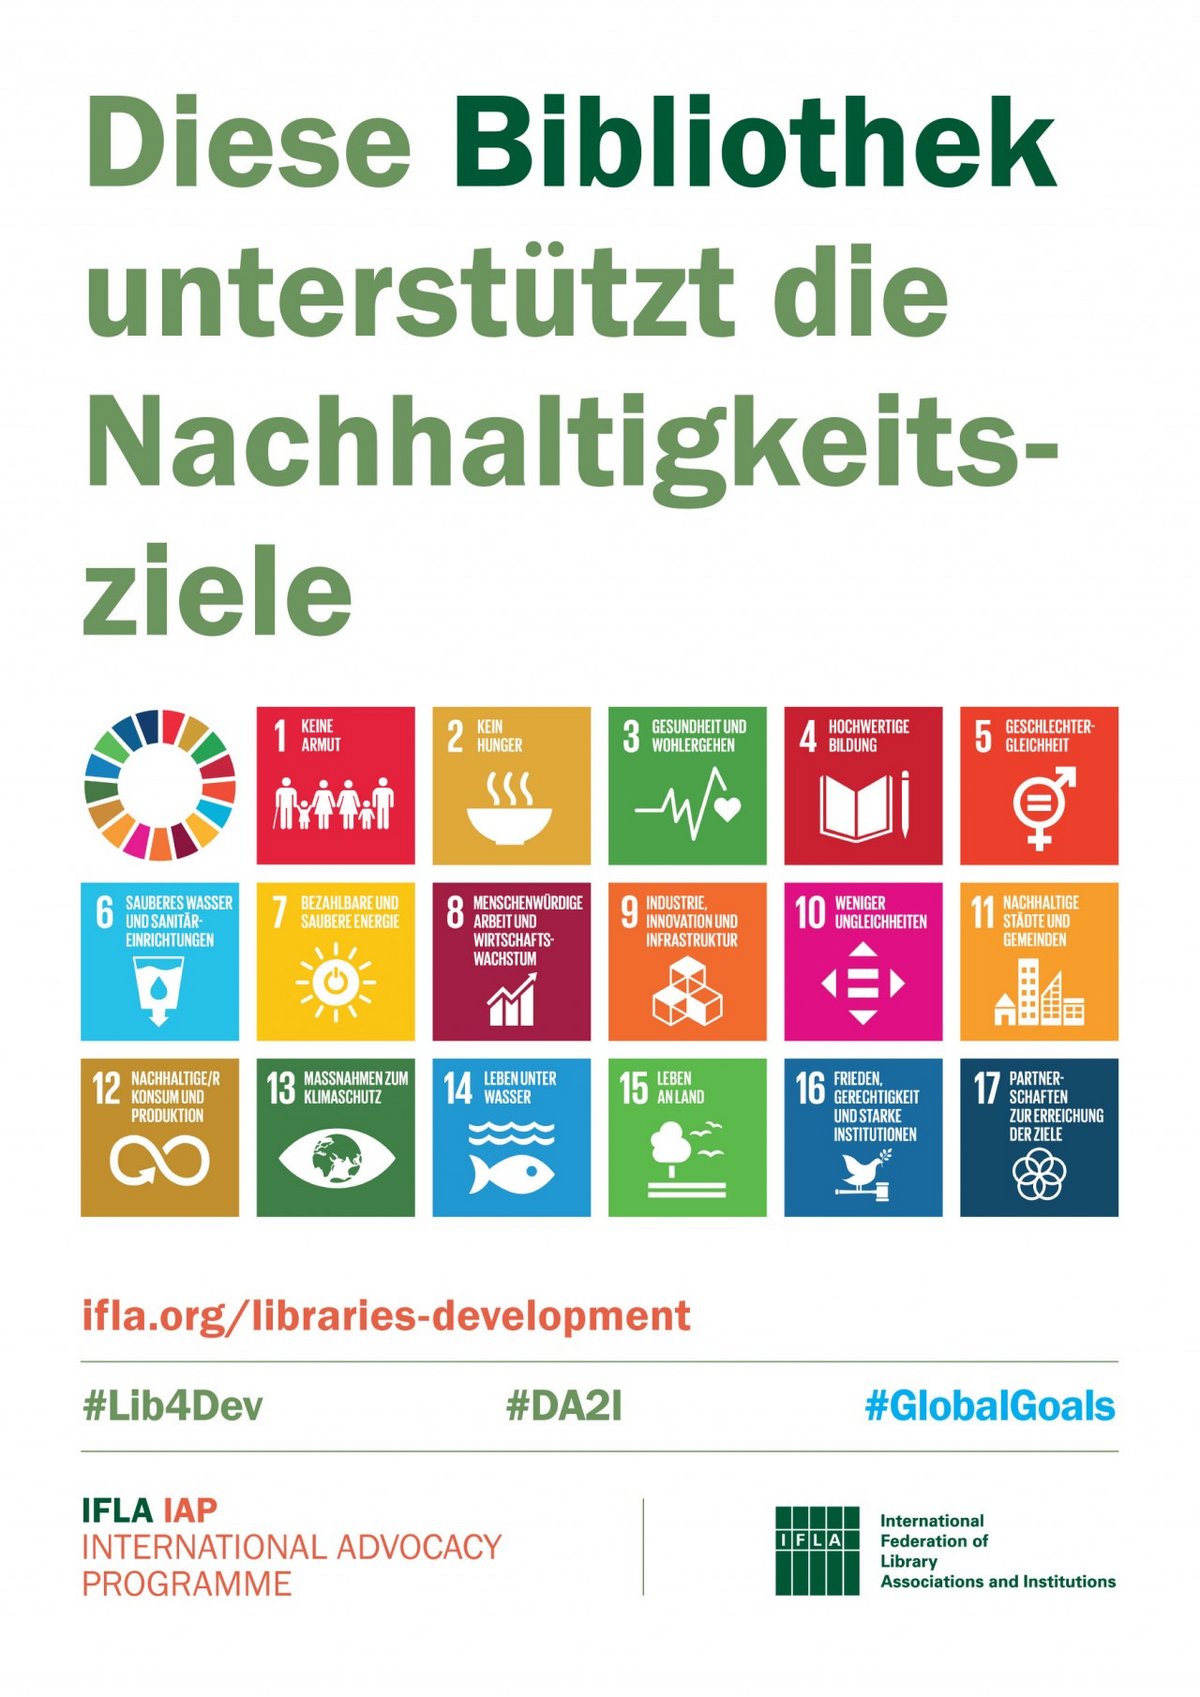 Das Poster der IFLA weißt darauf hin, dass die Bibliothek in der das Poster aushängt, die Nachhaltigkeitsziele unterstützt. Das Poster zeigt die einzelnen Nachhaltigkeitsziele.